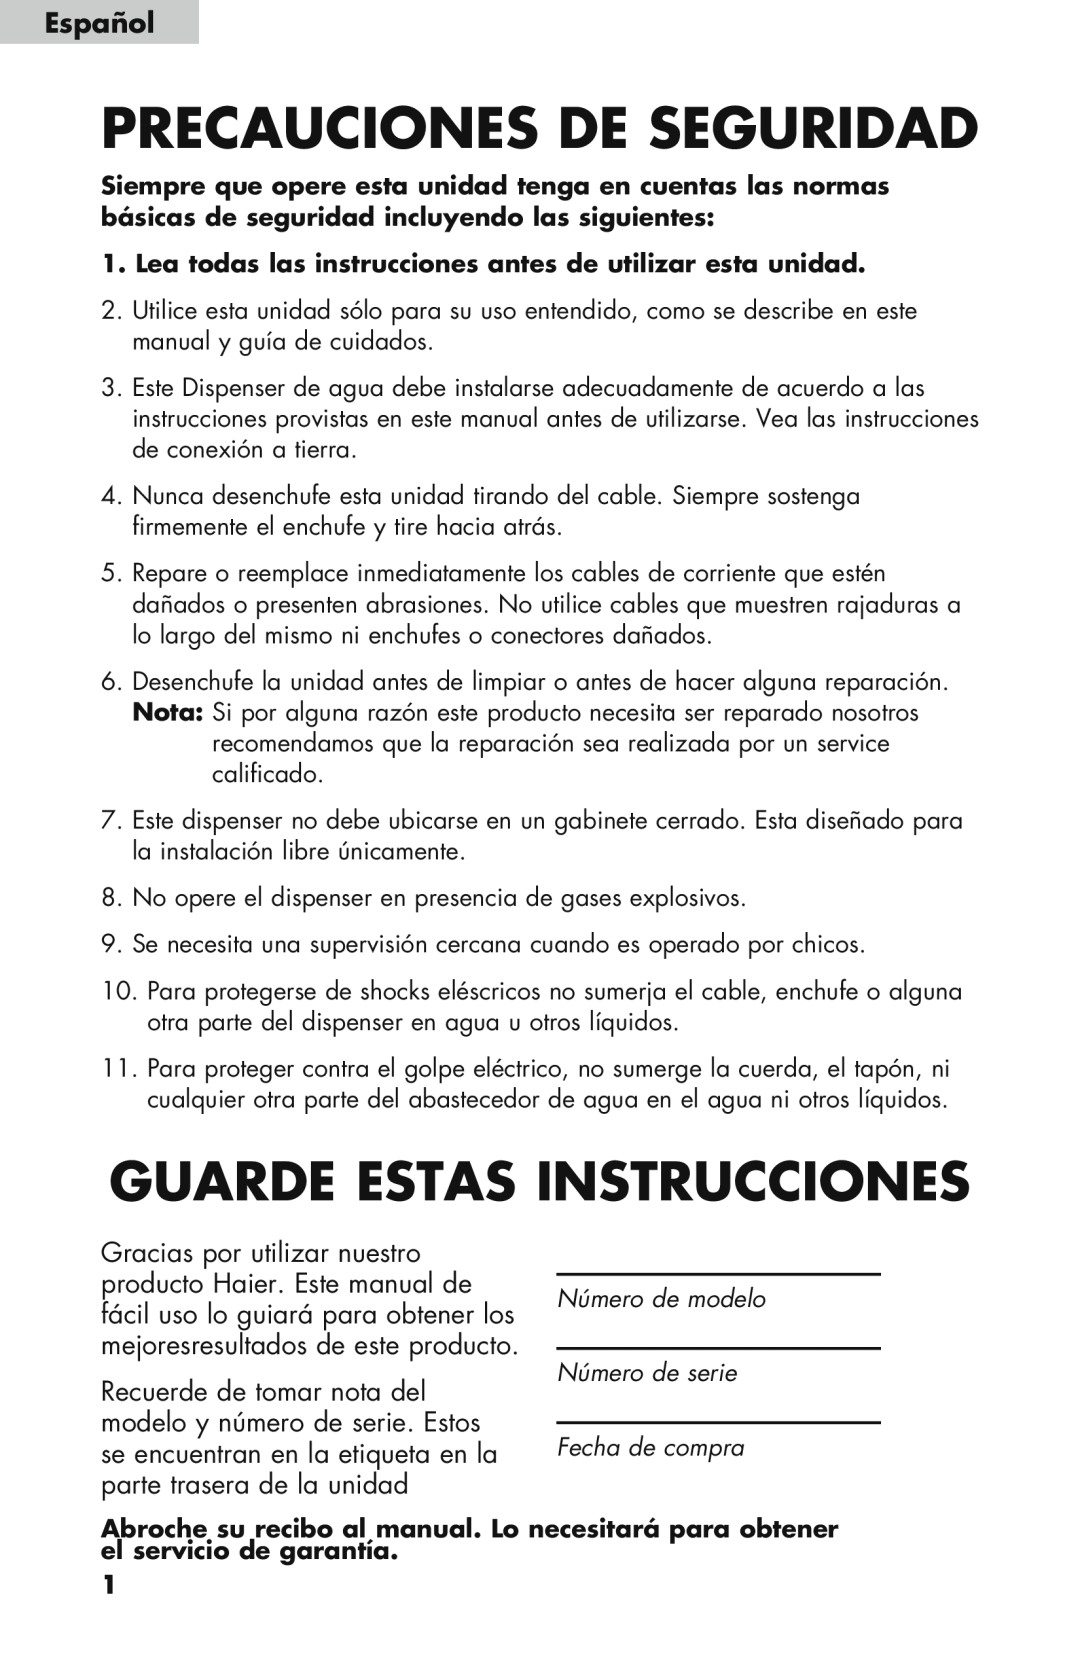 Haier WDNS32BW, WDNS121SS, WDNS115BW user manual Español, Precauciones De Seguridad, Guarde Estas Instrucciones 